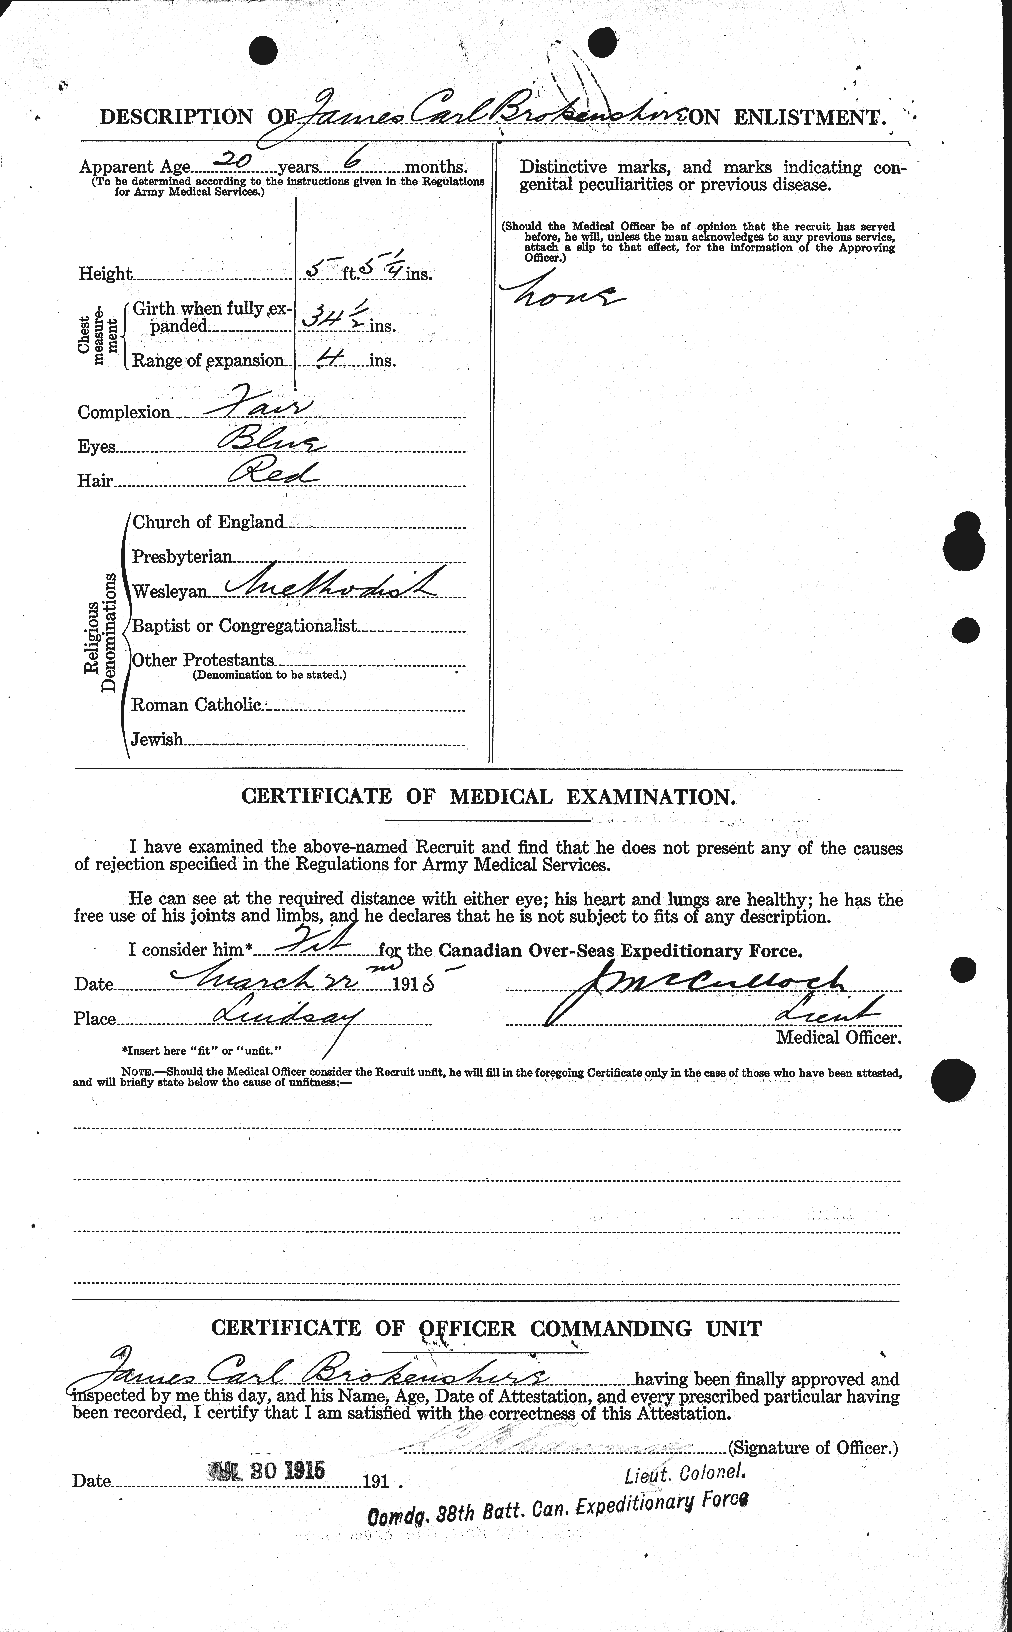 Dossiers du Personnel de la Première Guerre mondiale - CEC 262102b